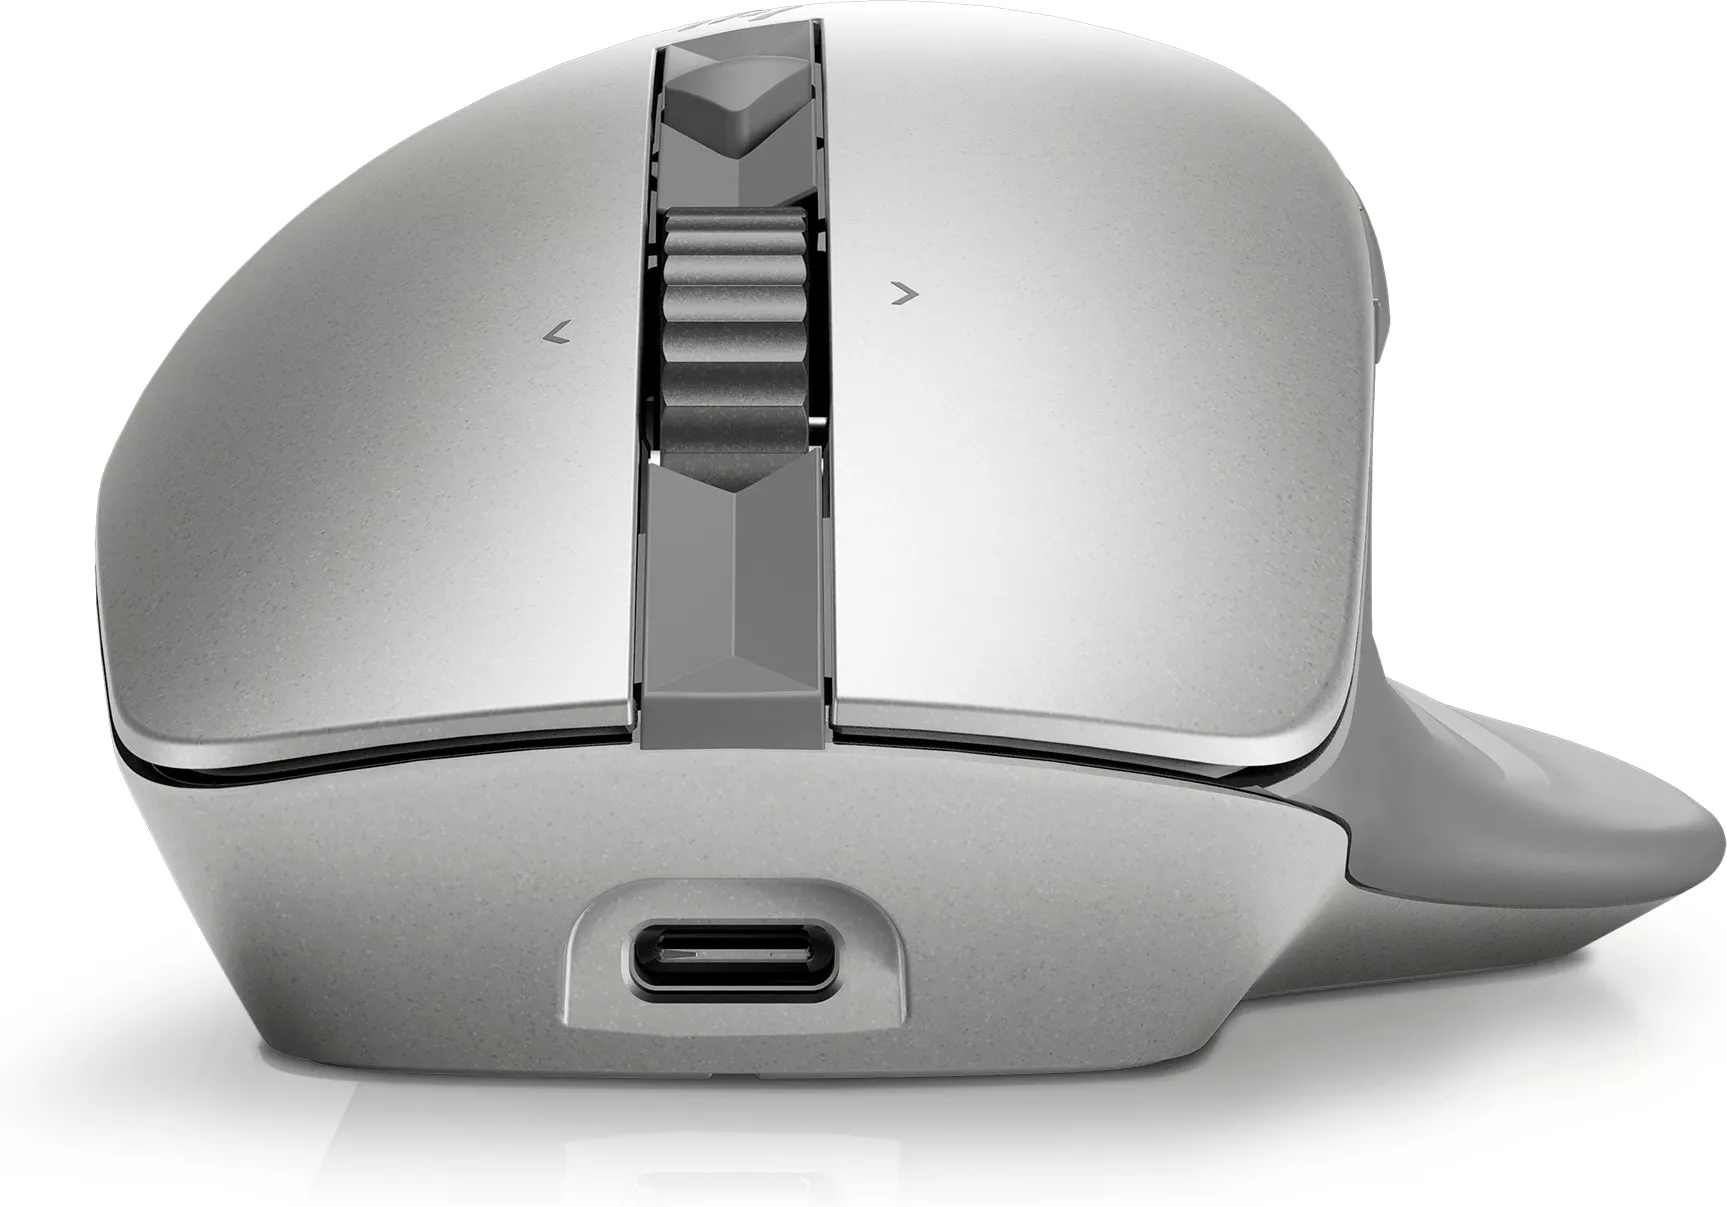 Vente HP Creator 930 SLV WRLS Mouse HP au meilleur prix - visuel 8